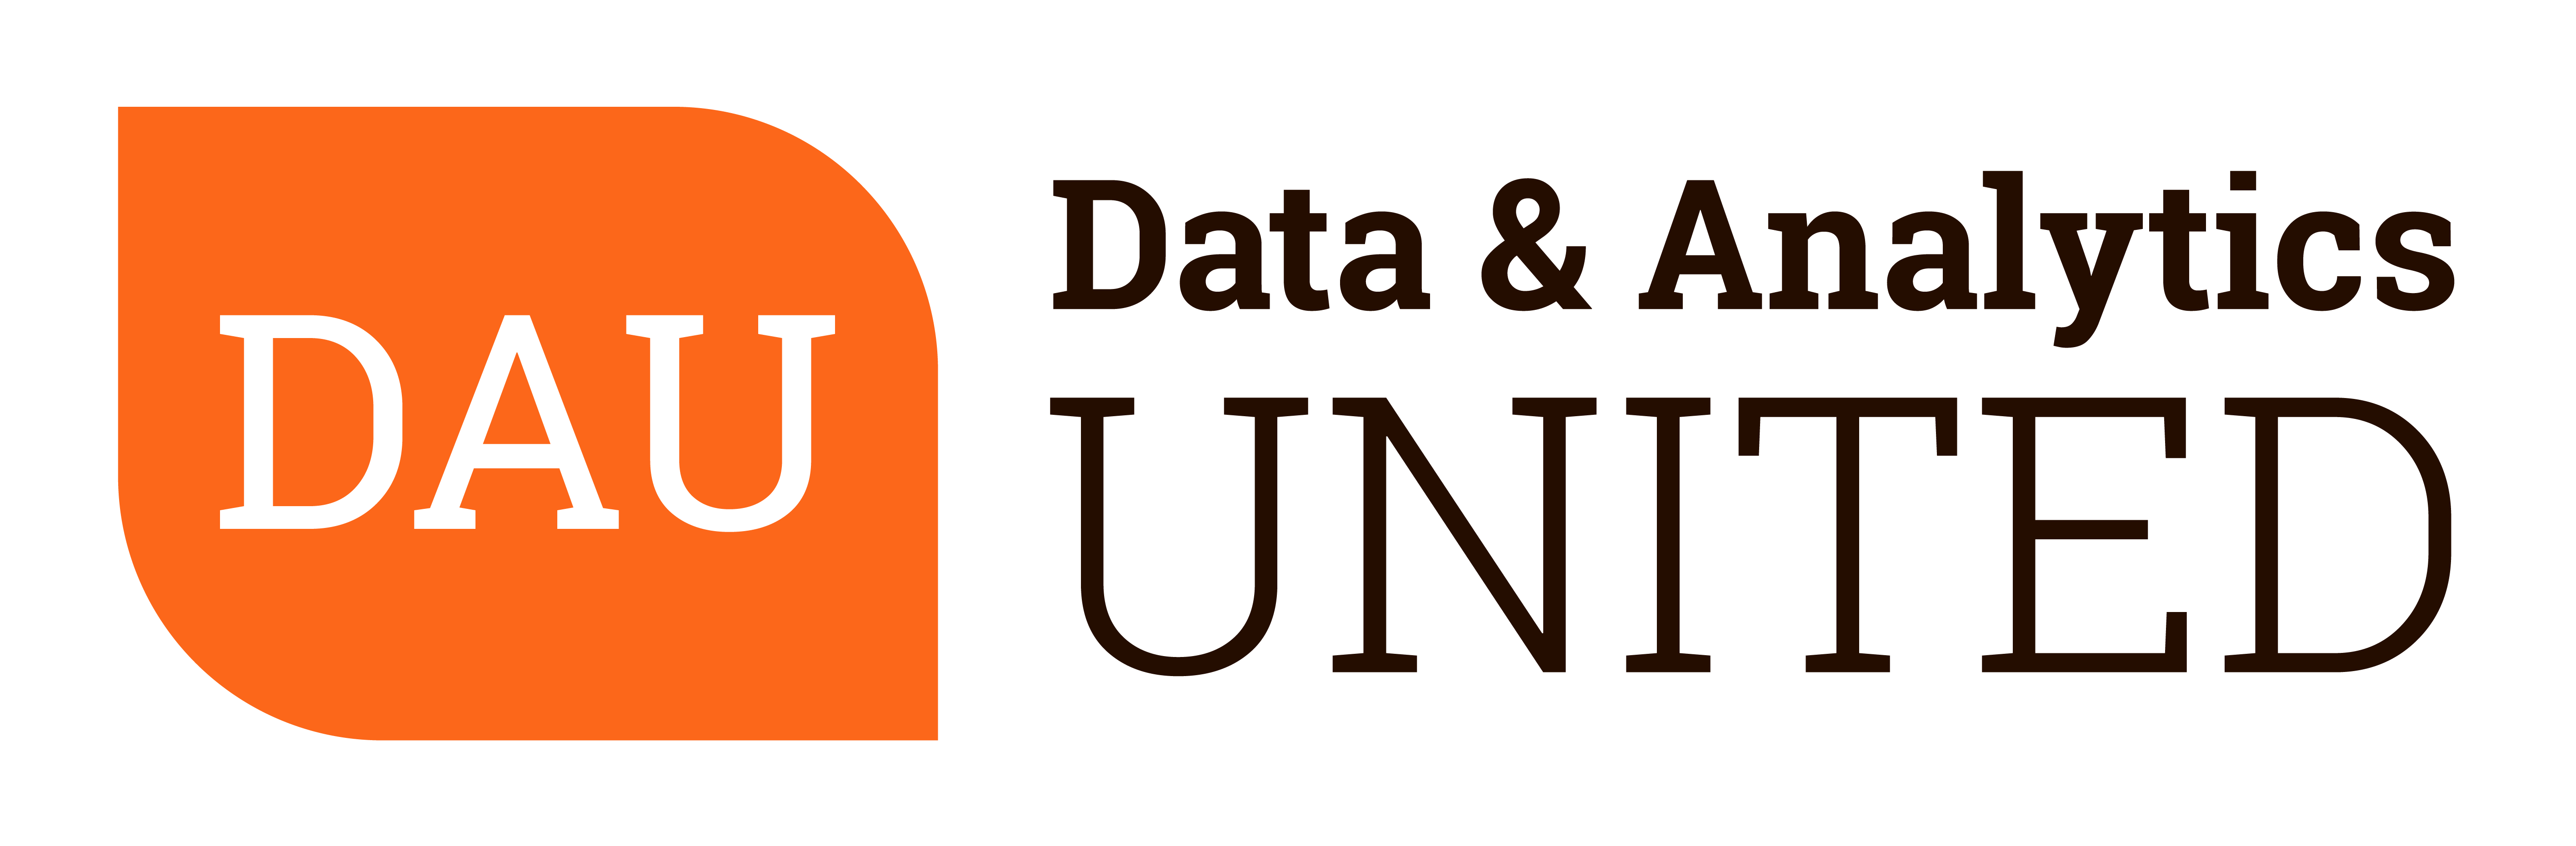 Data & Analytics United (DAU)